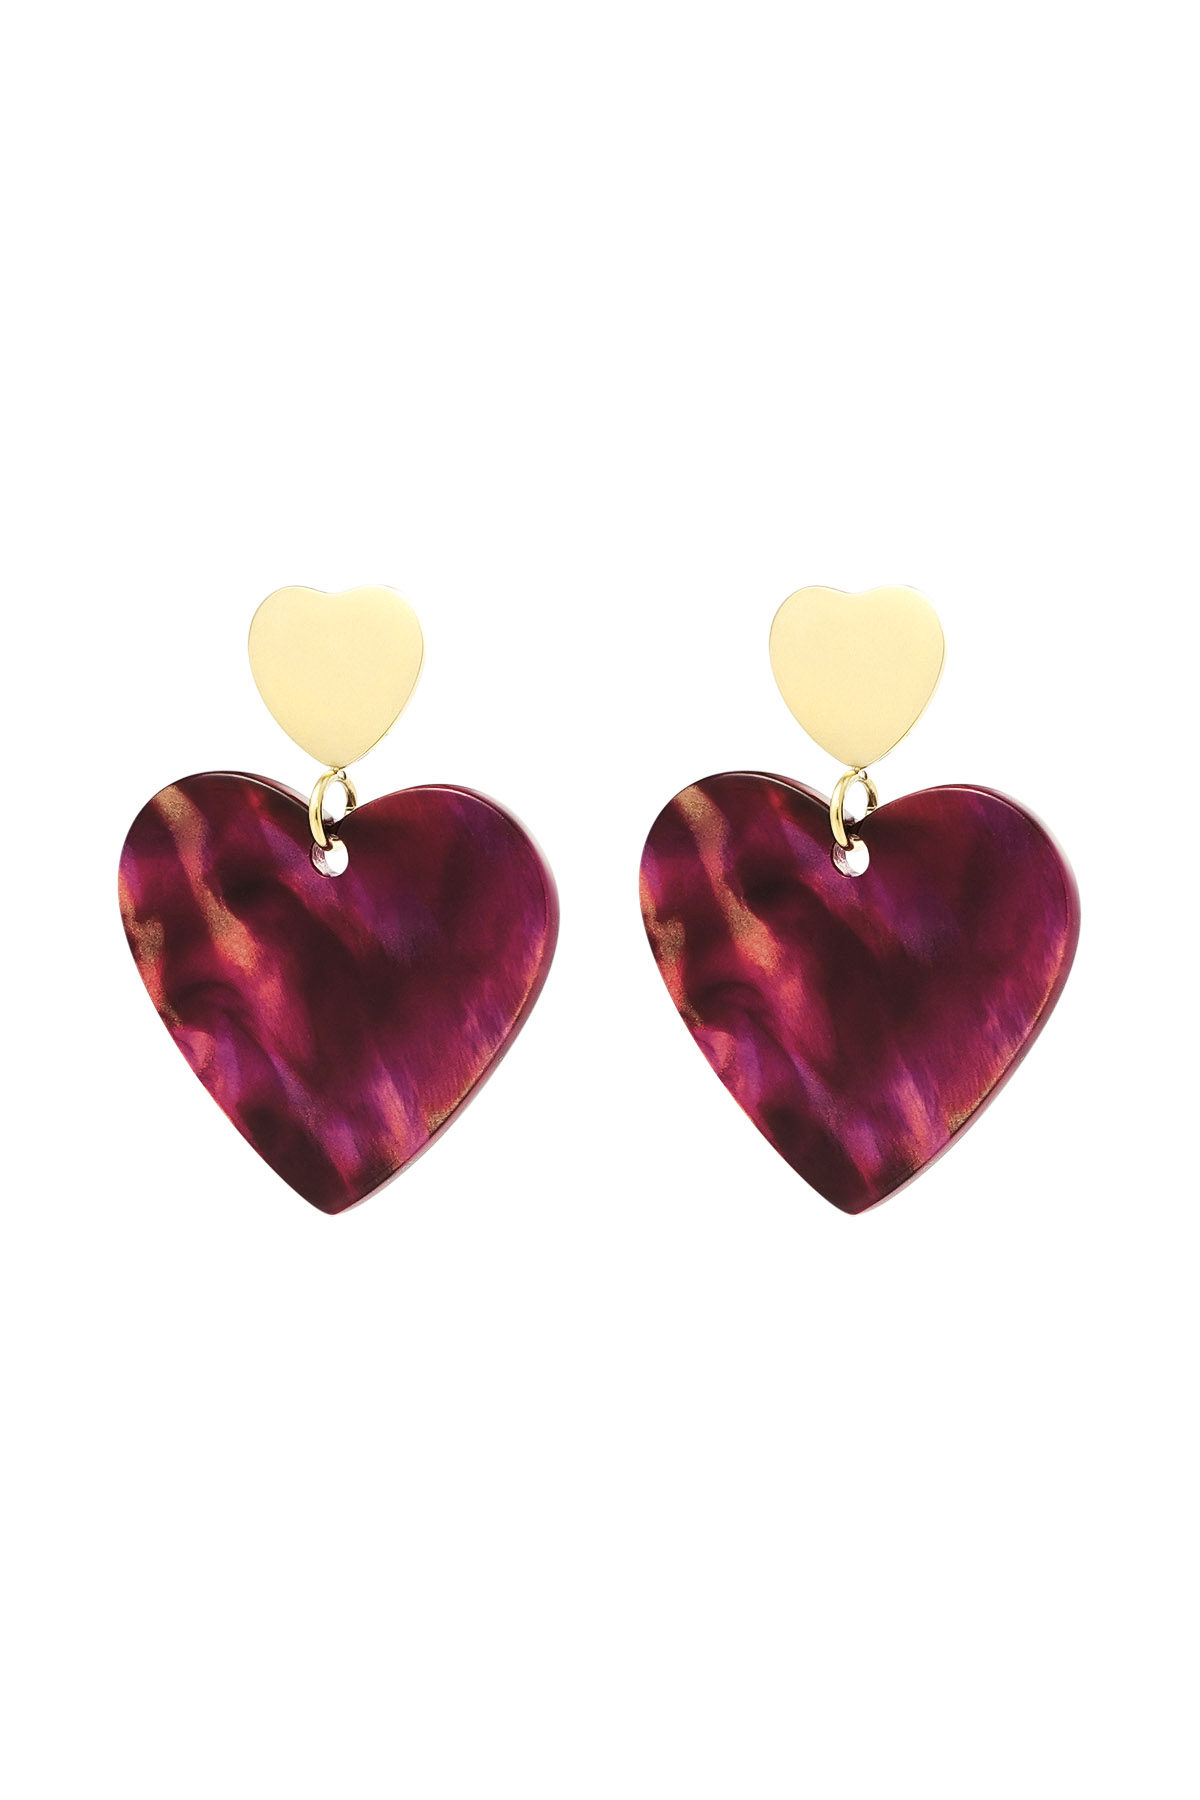 Boucles d'oreilles double coeur - doré/rouge 